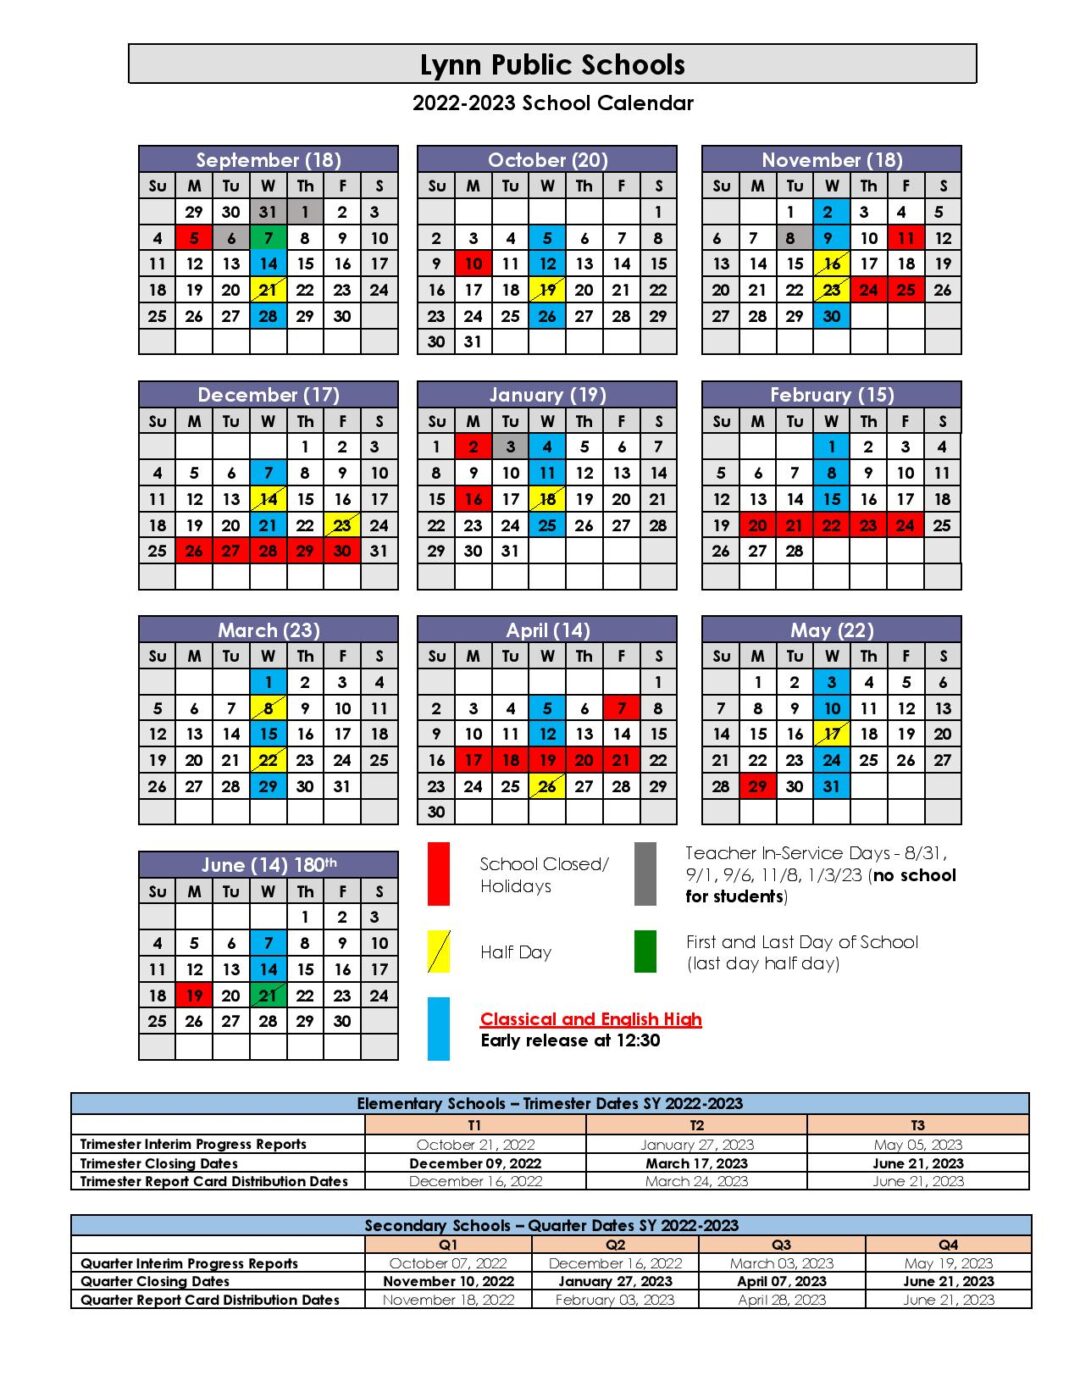 lynn-public-schools-calendar-2022-2023-in-pdf